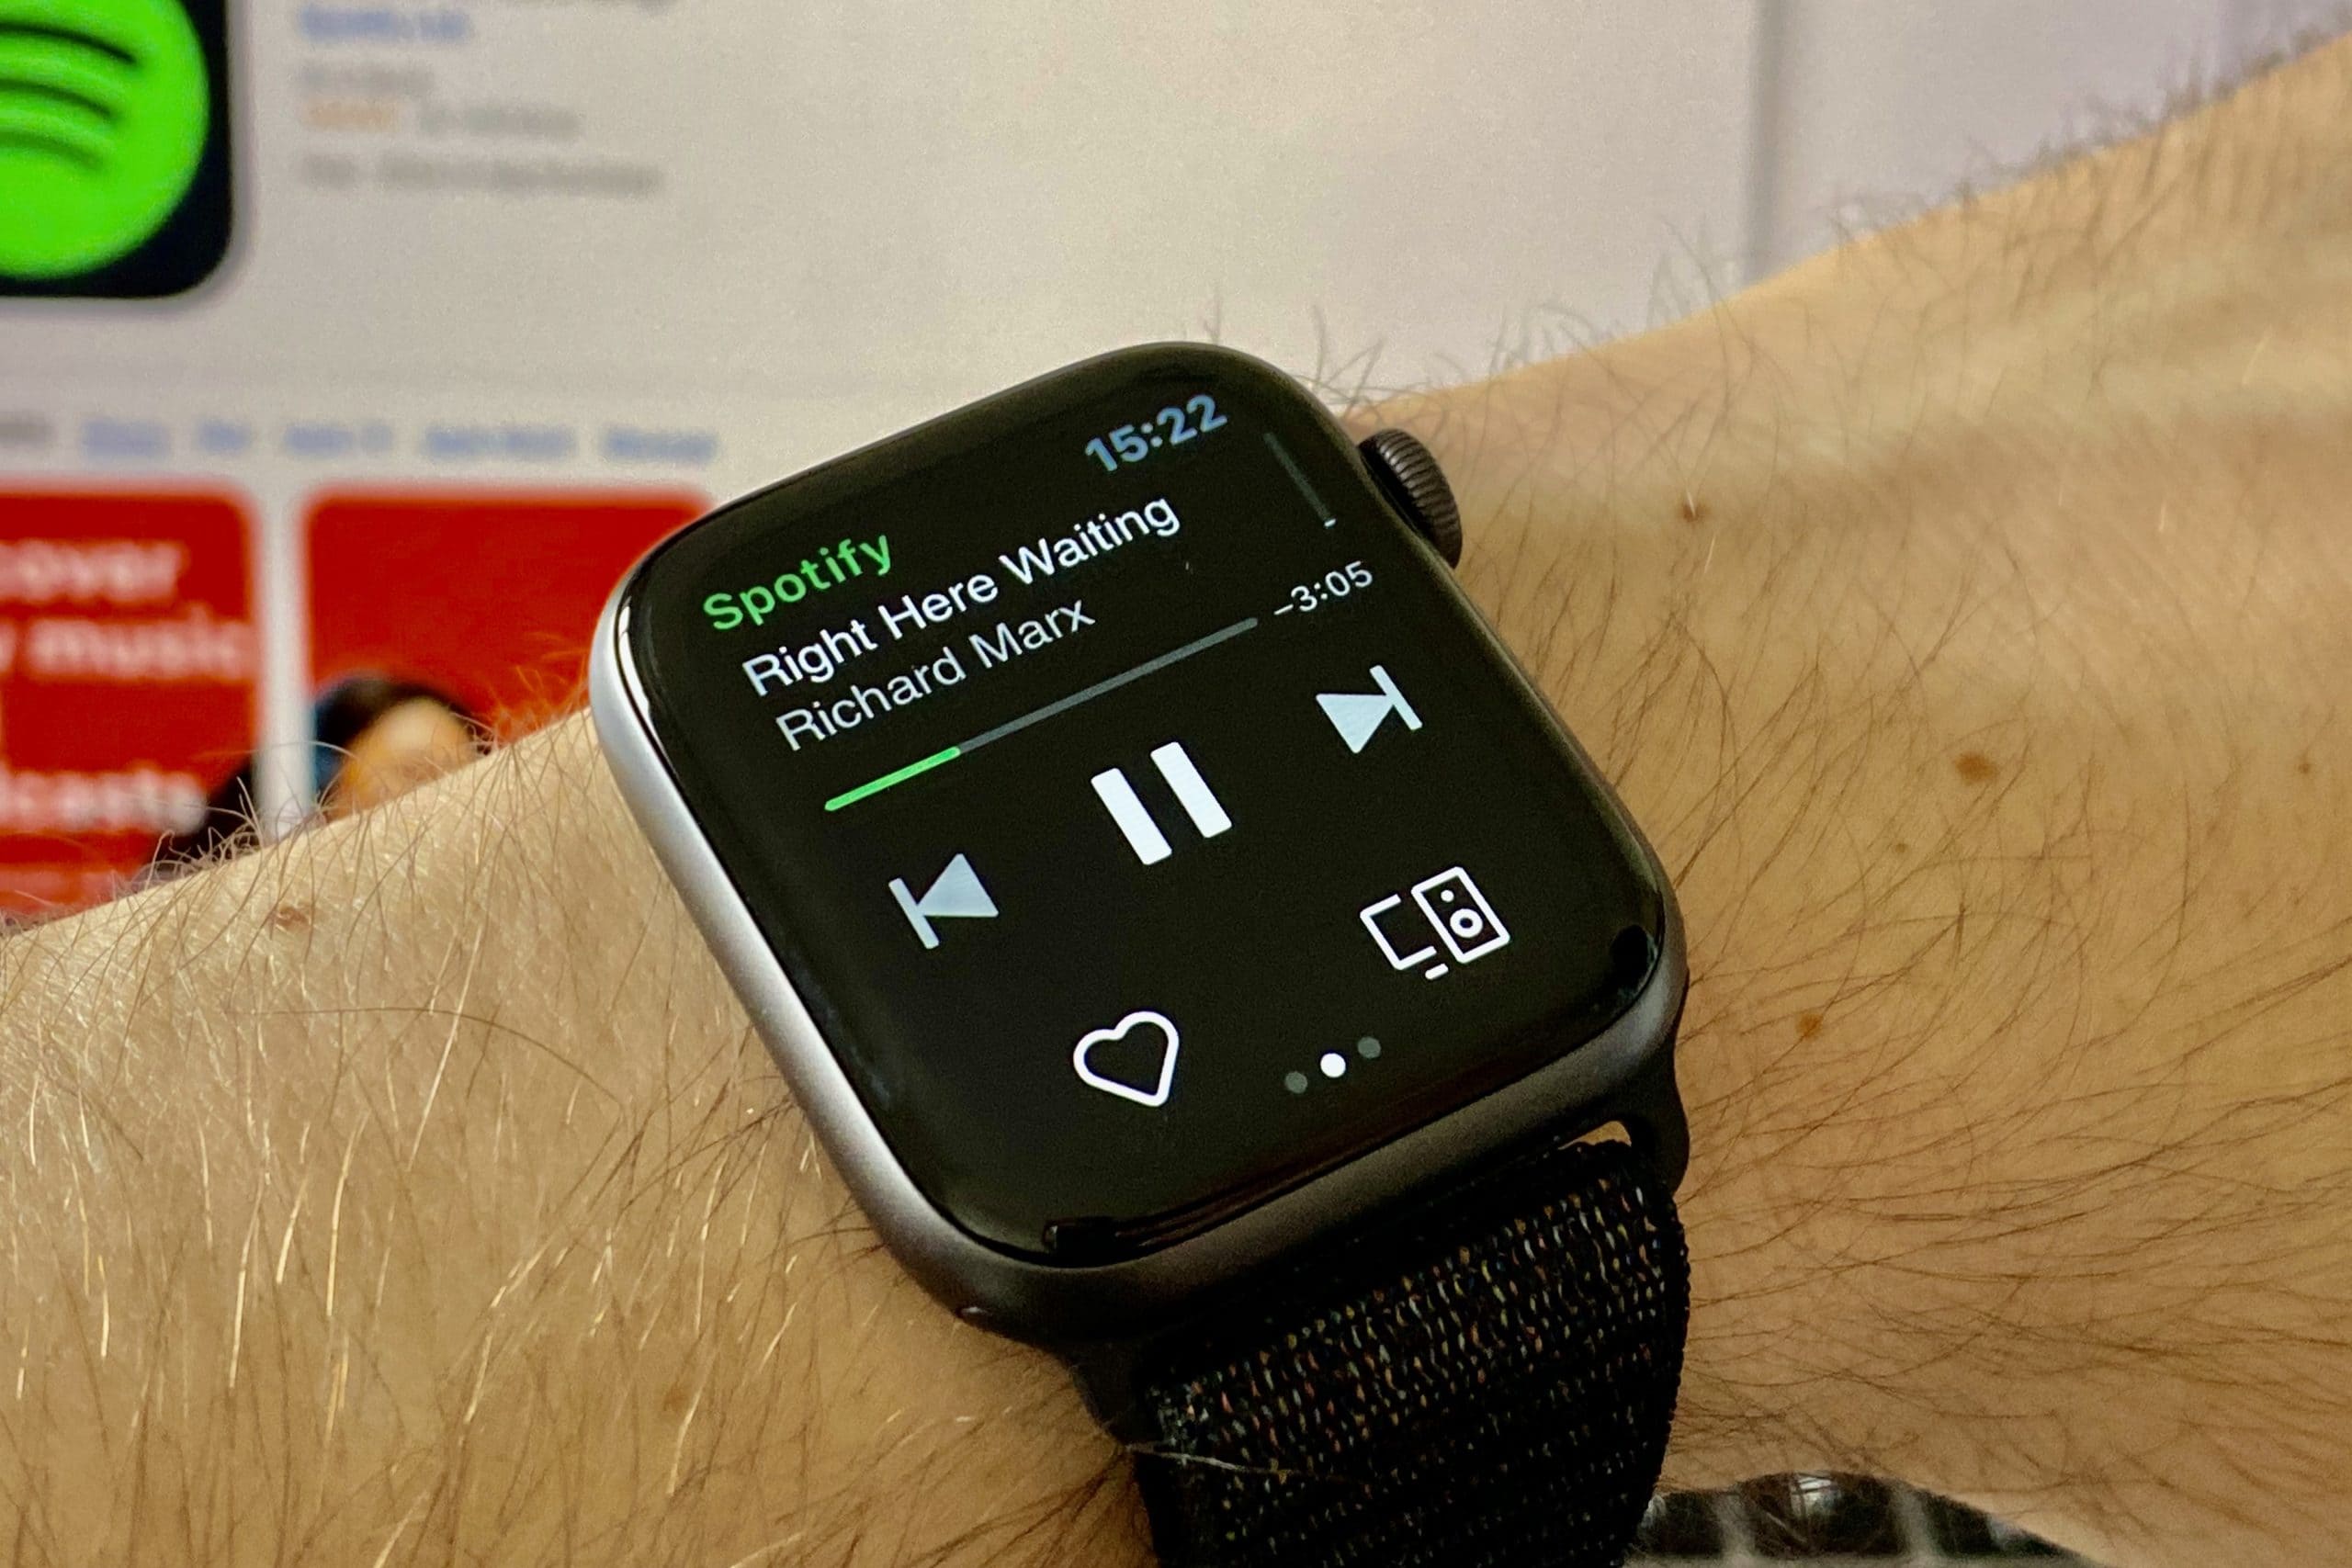 Cómo descargar canciones de Spotify en Apple Watch